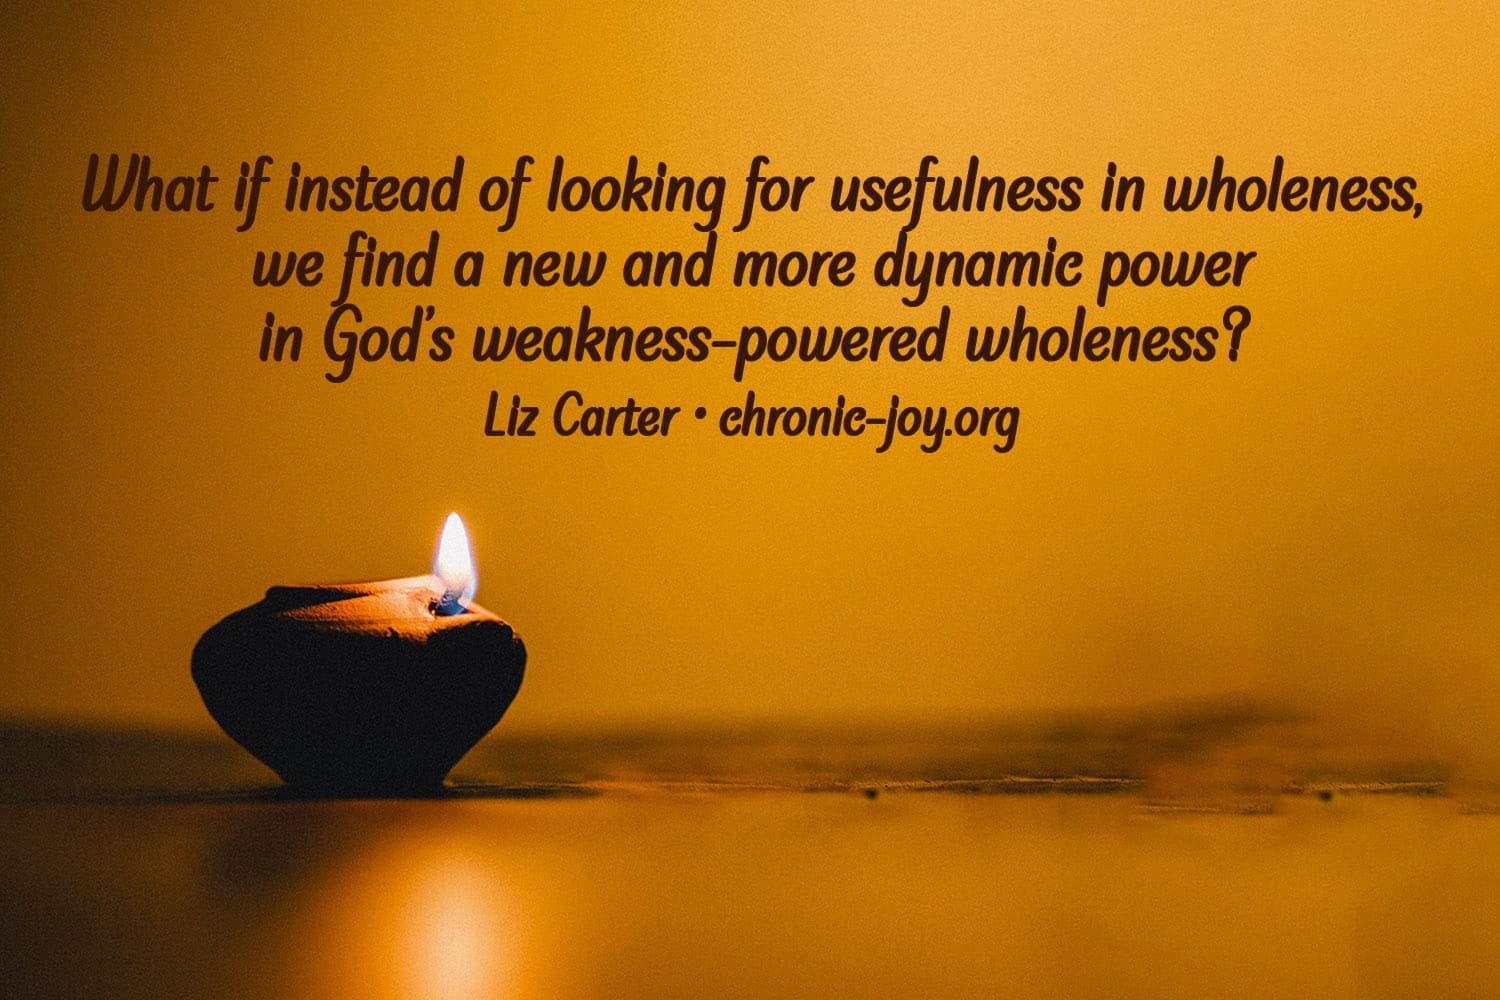 Seeking God's weakness-powered wholeness